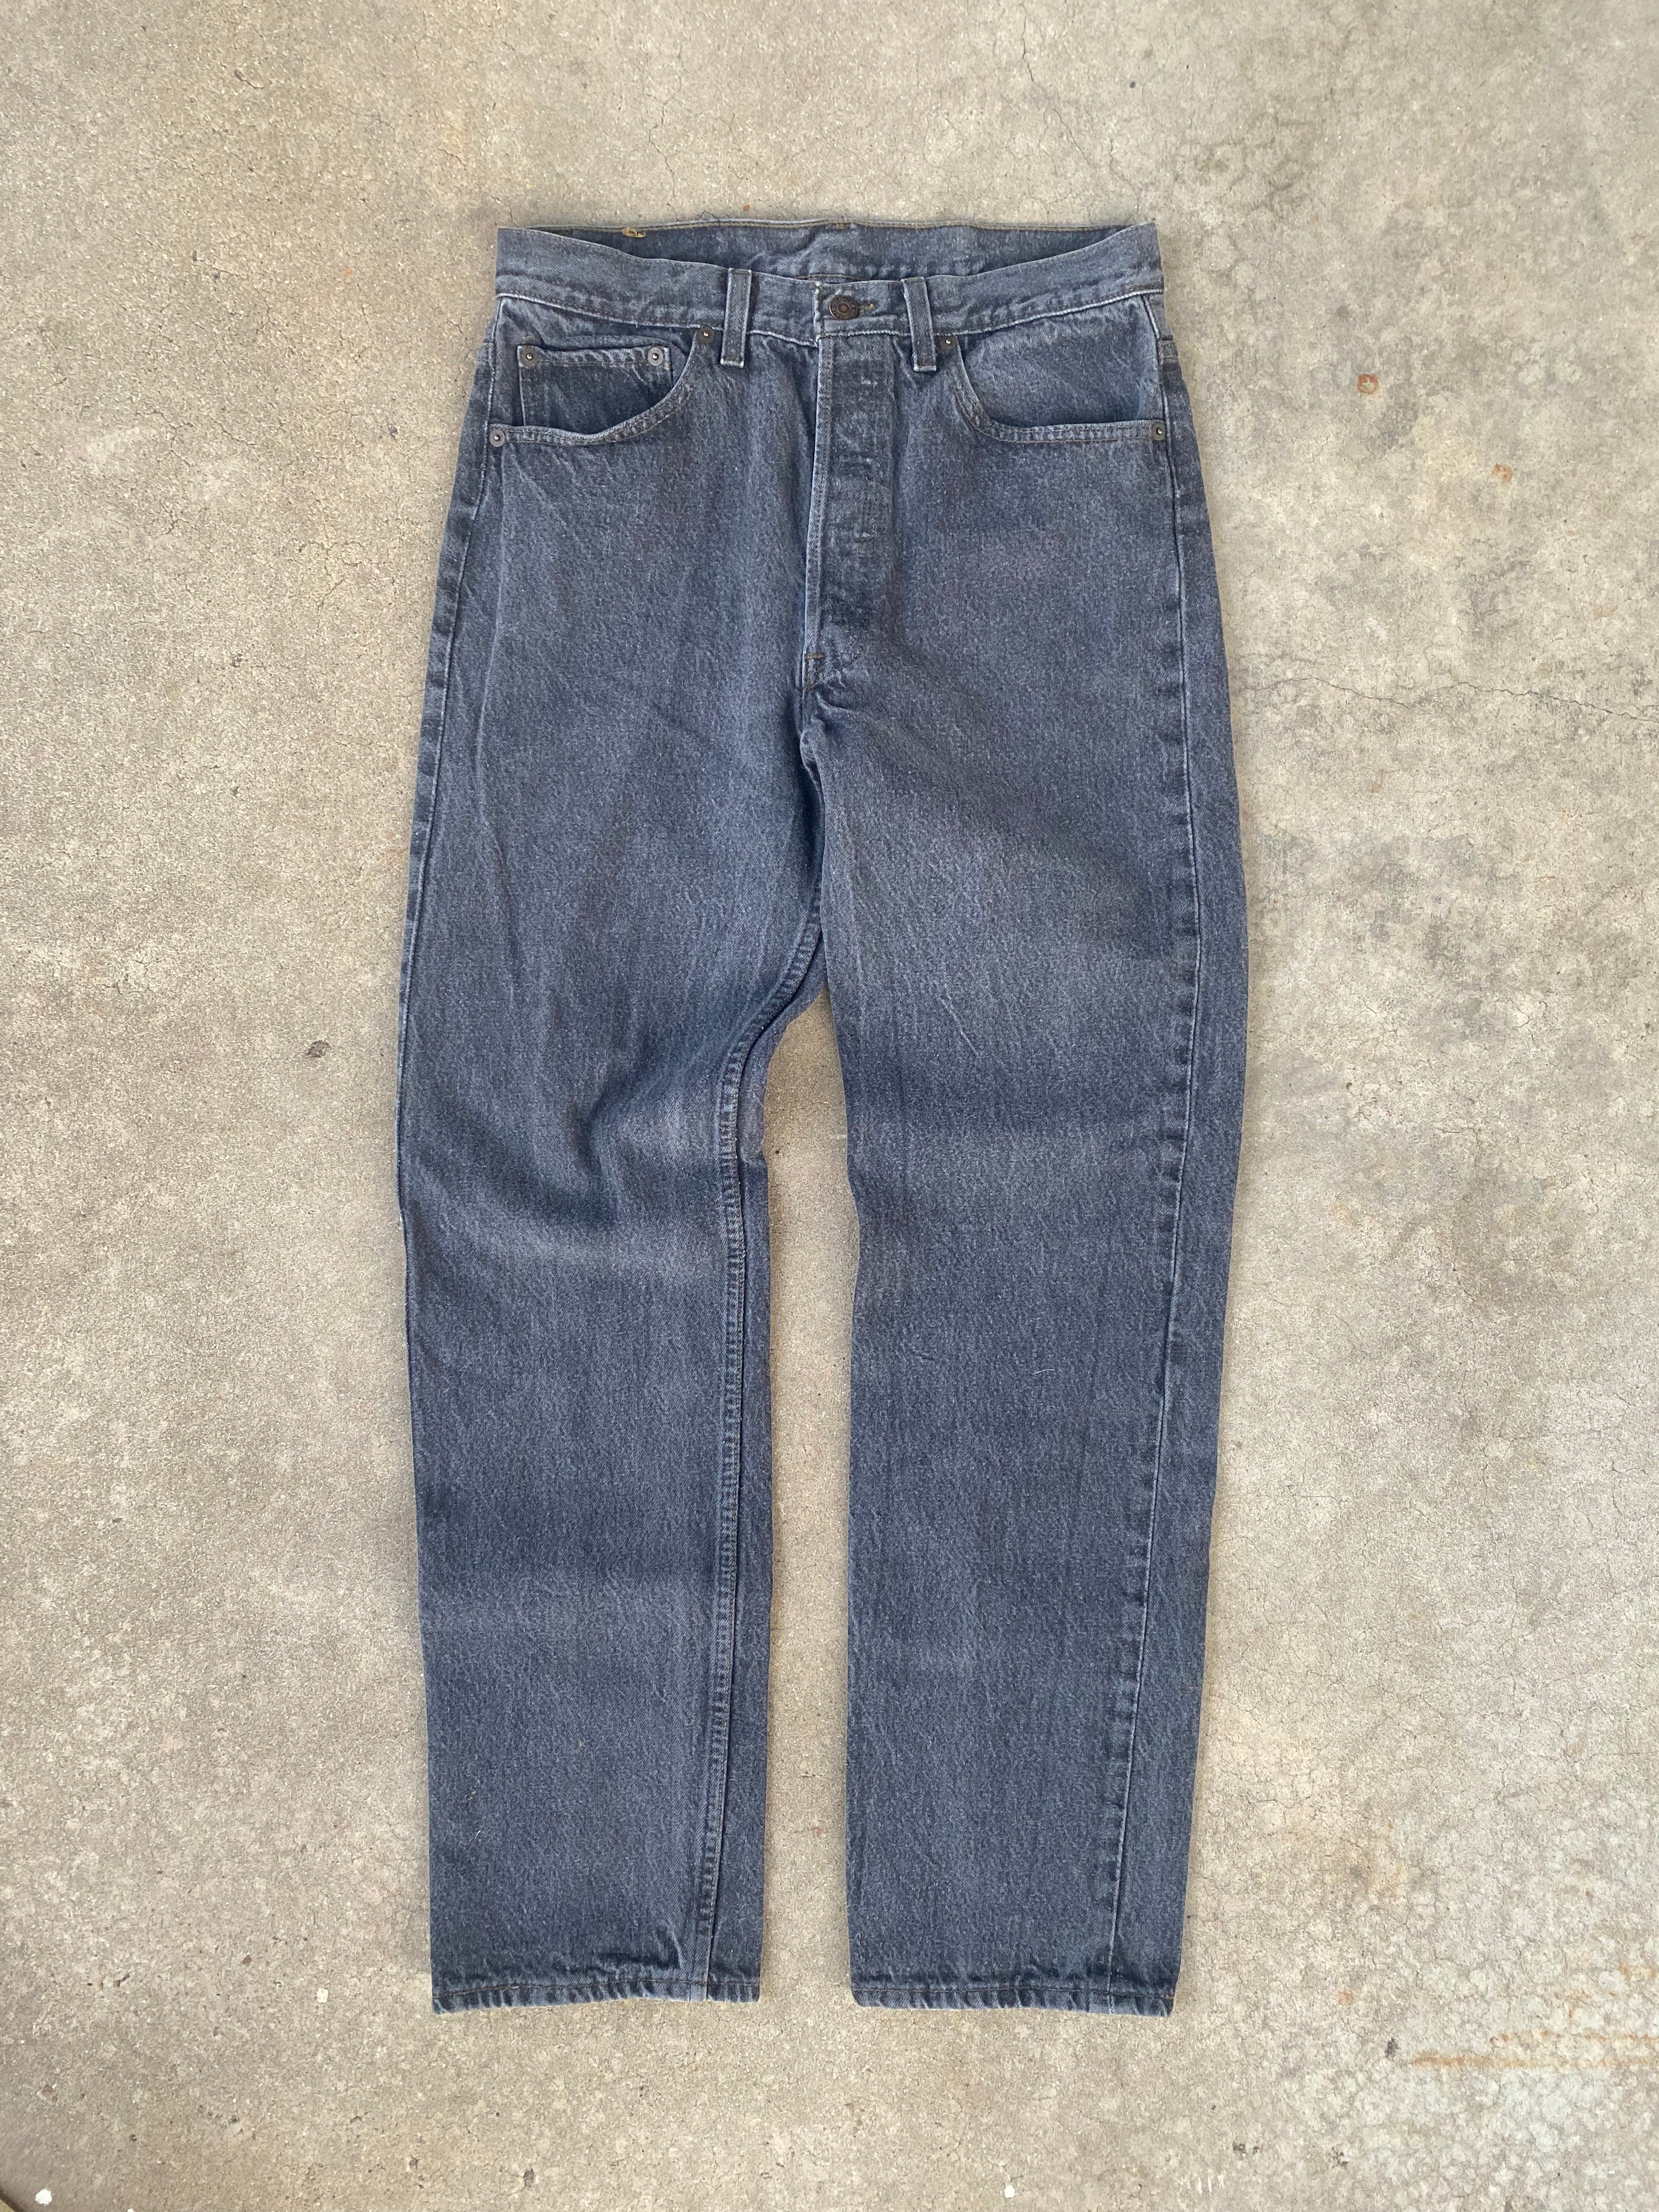 1993 Levi’s 501 Jeans